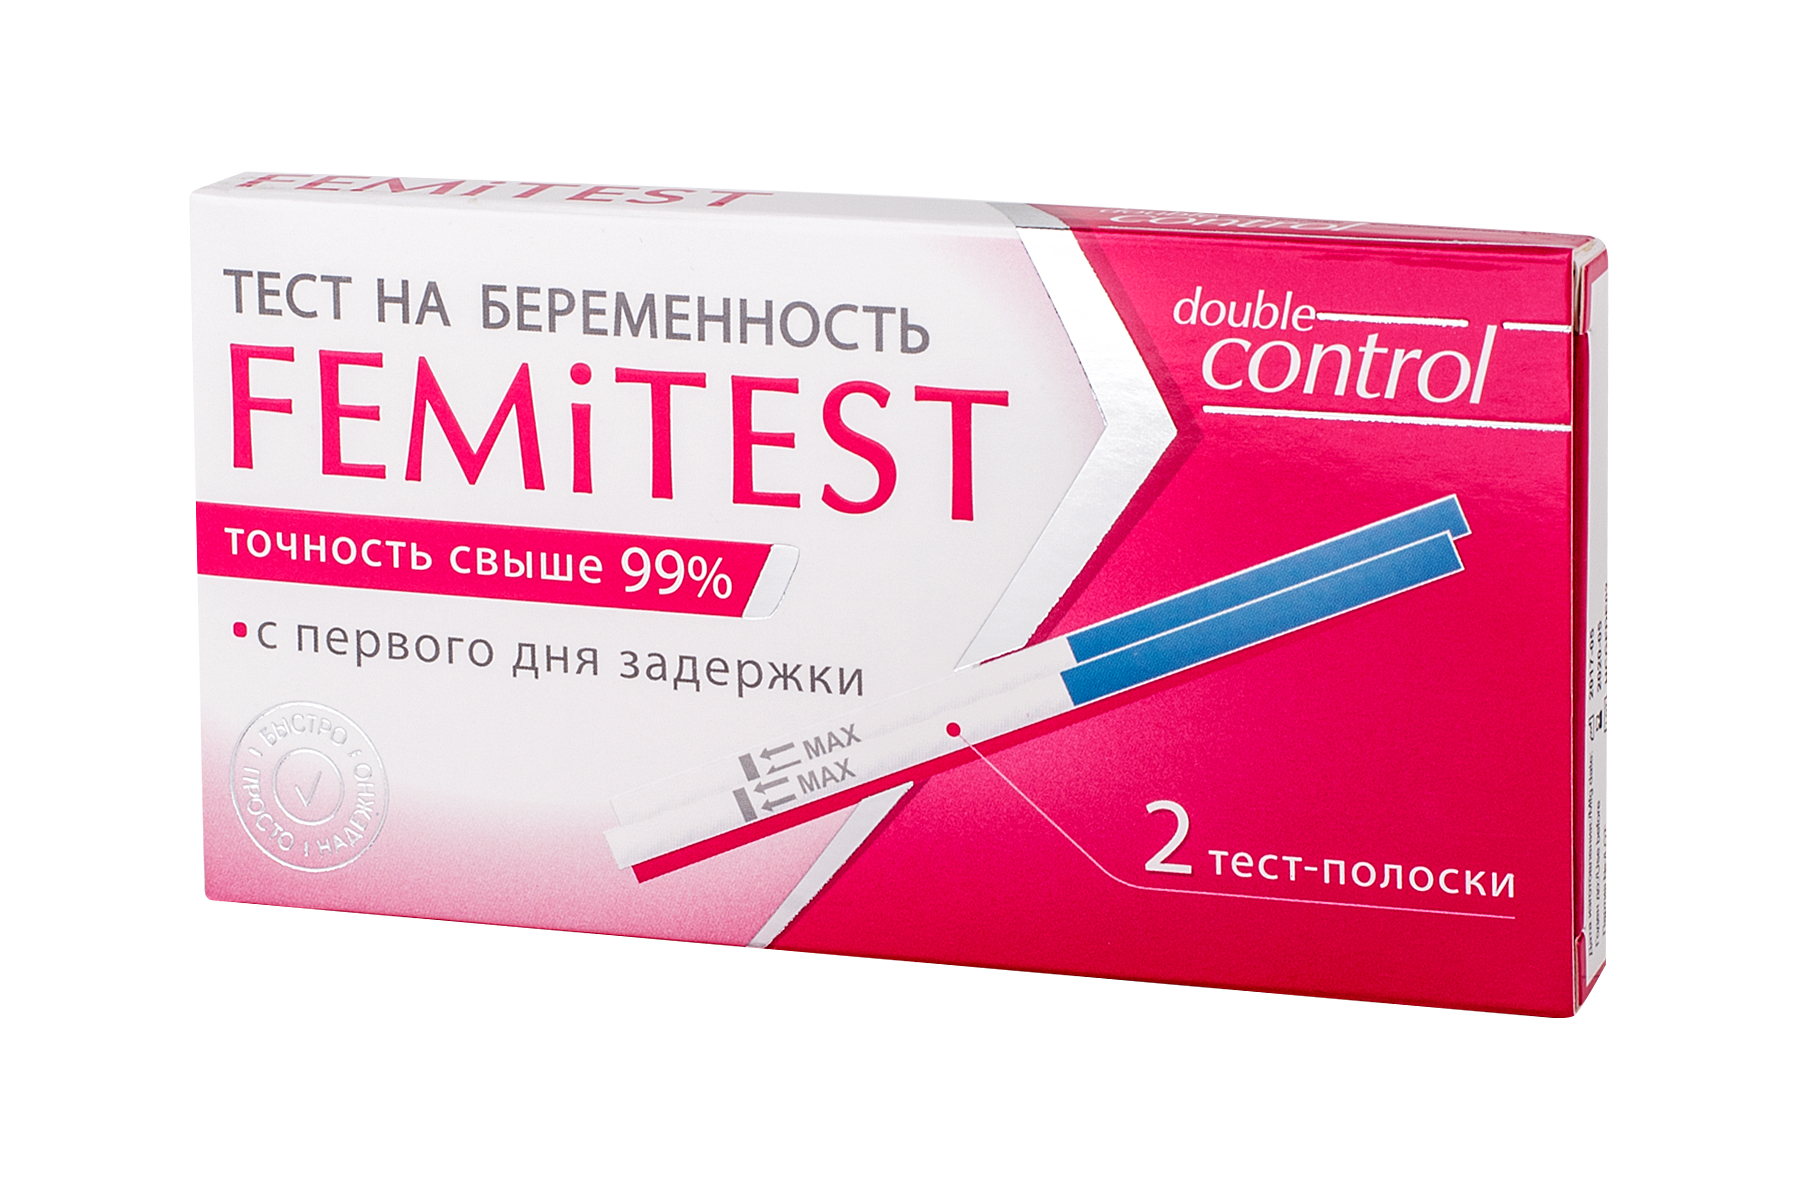 Тест femitest отзывы. Femitest тест на беременность 2 полоски. Тест для определения беременности ФЕМИТЕСТ Дабл контроль. Тест на беременность ФЕМИТЕСТ Дабл контроль №2. Femitest 1 тест полоска.